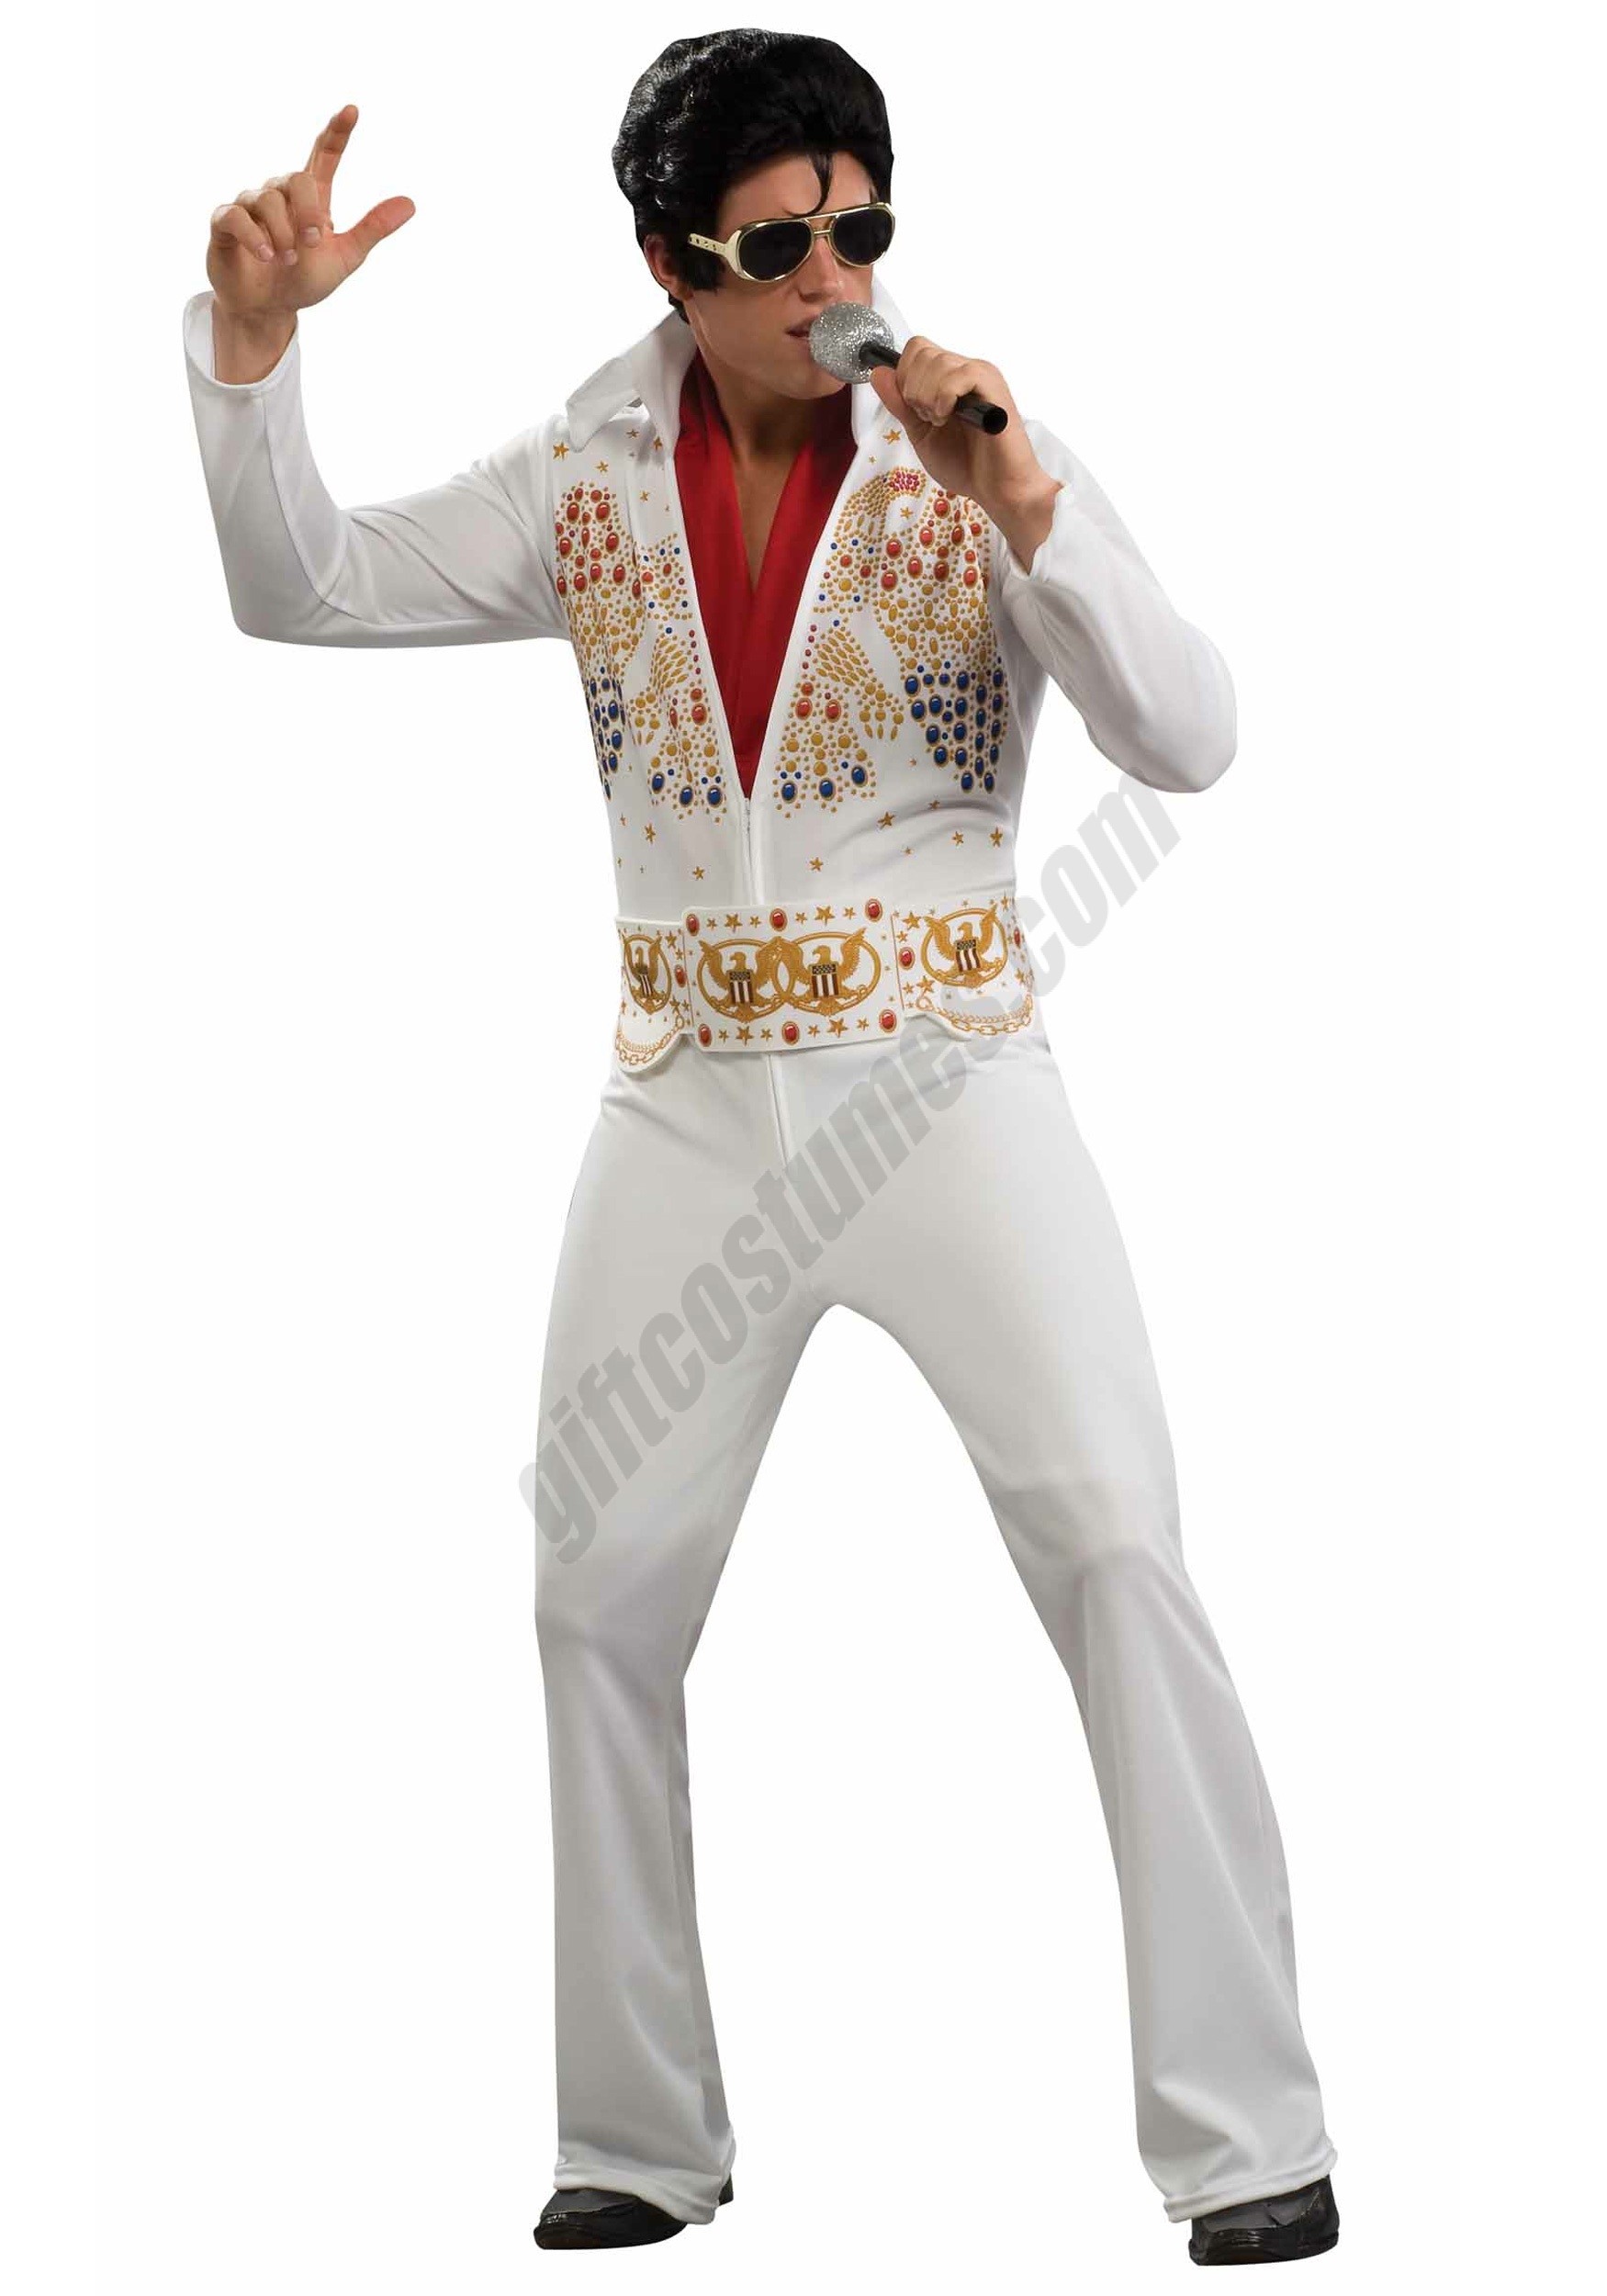 Adult Elvis Costume - Men's - Adult Elvis Costume - Men's